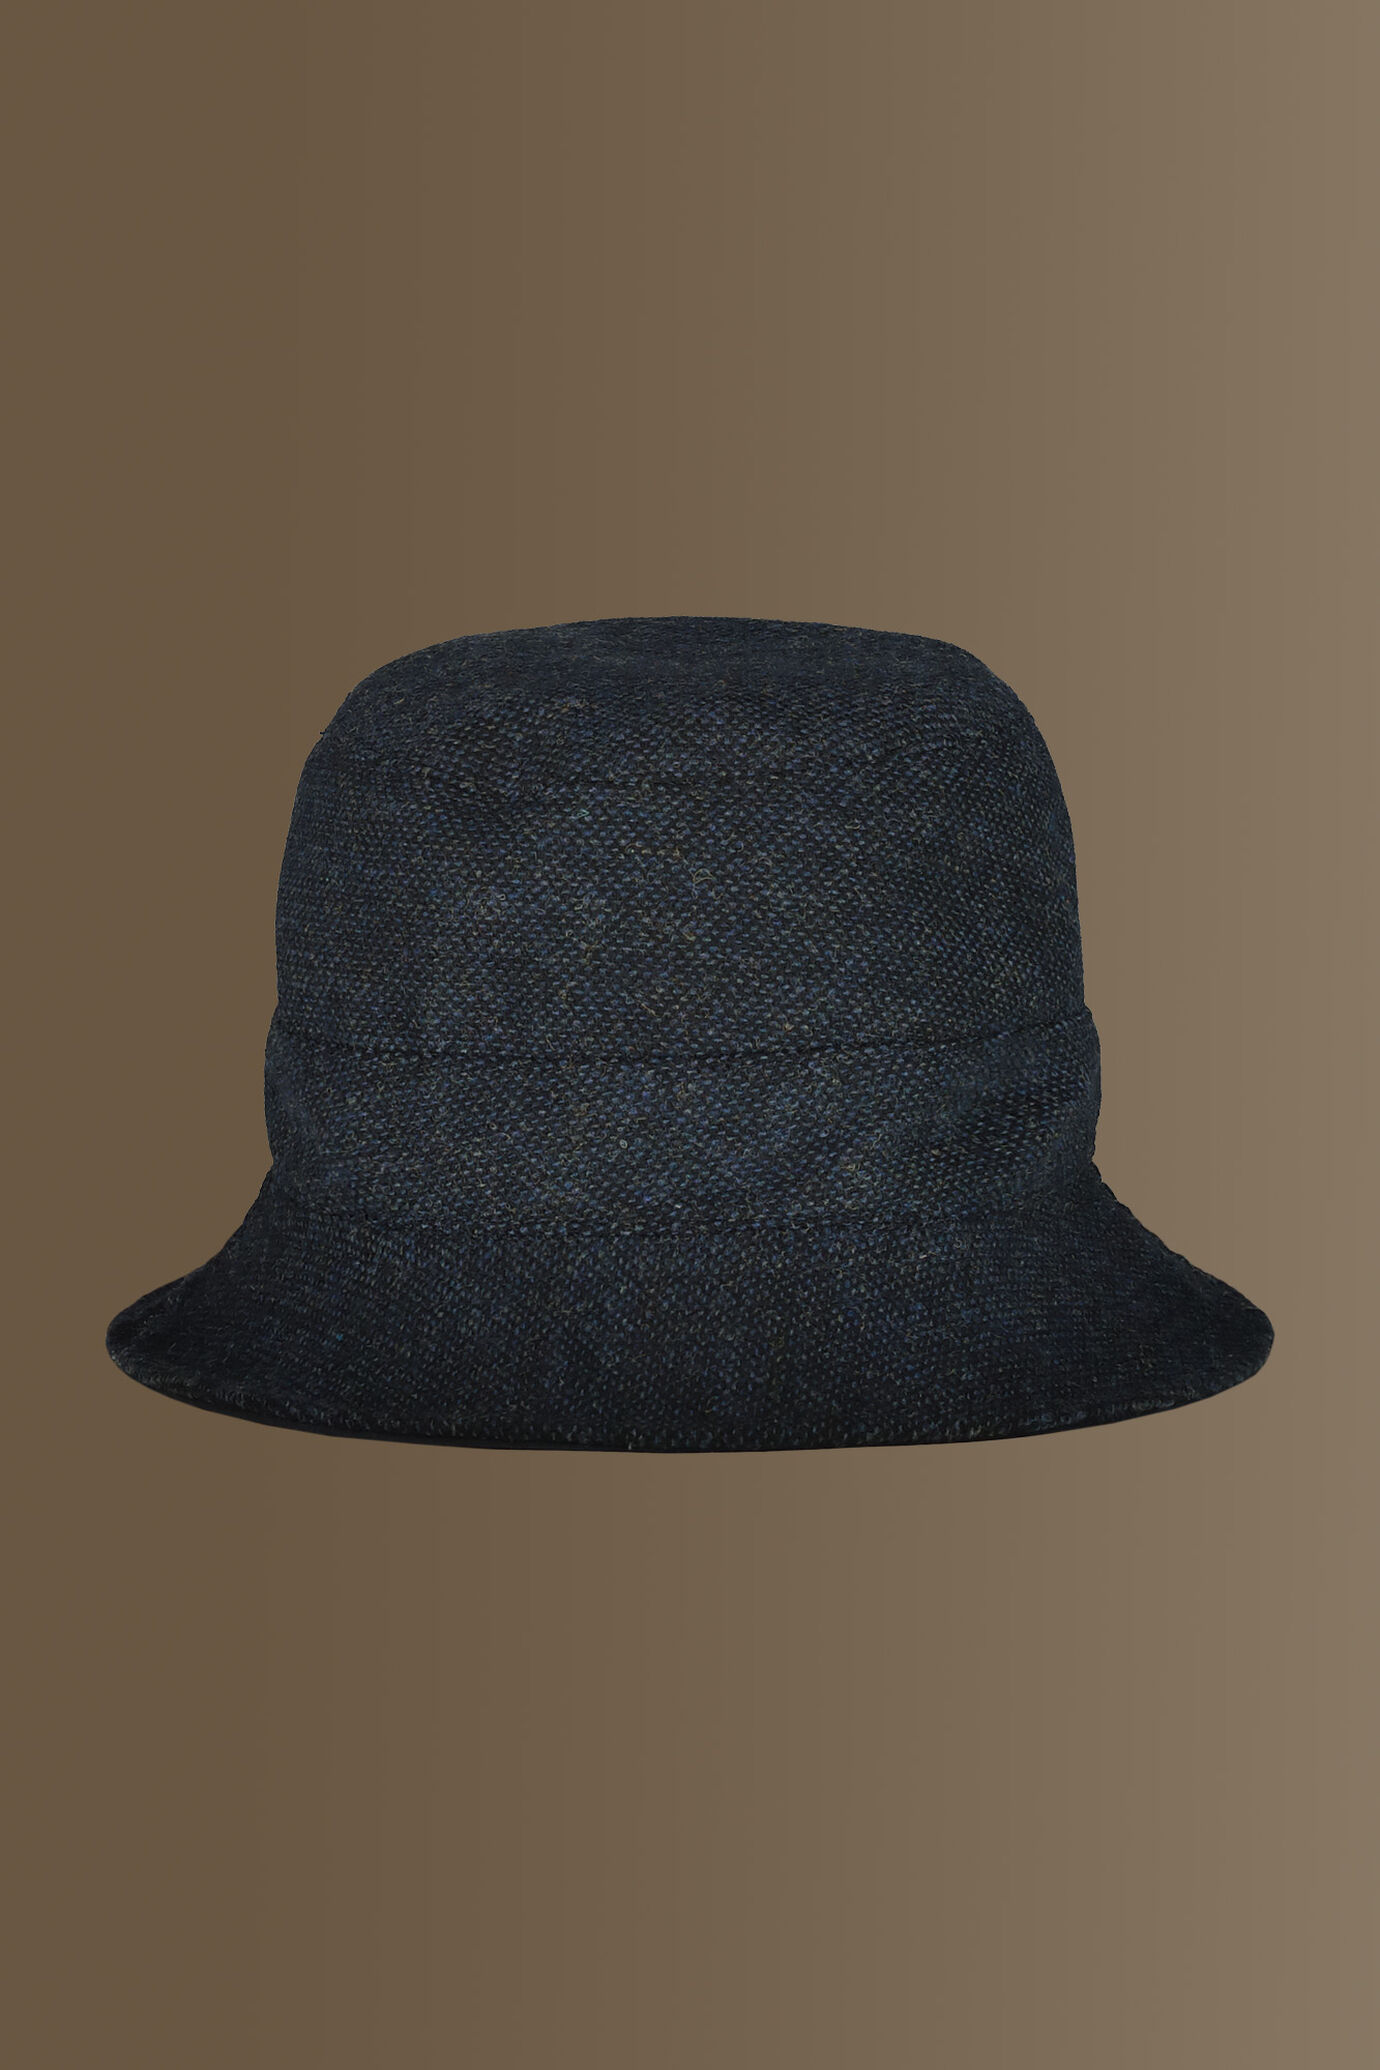 Cappello stile fisherman misto lana - tessuto occhio di pernice